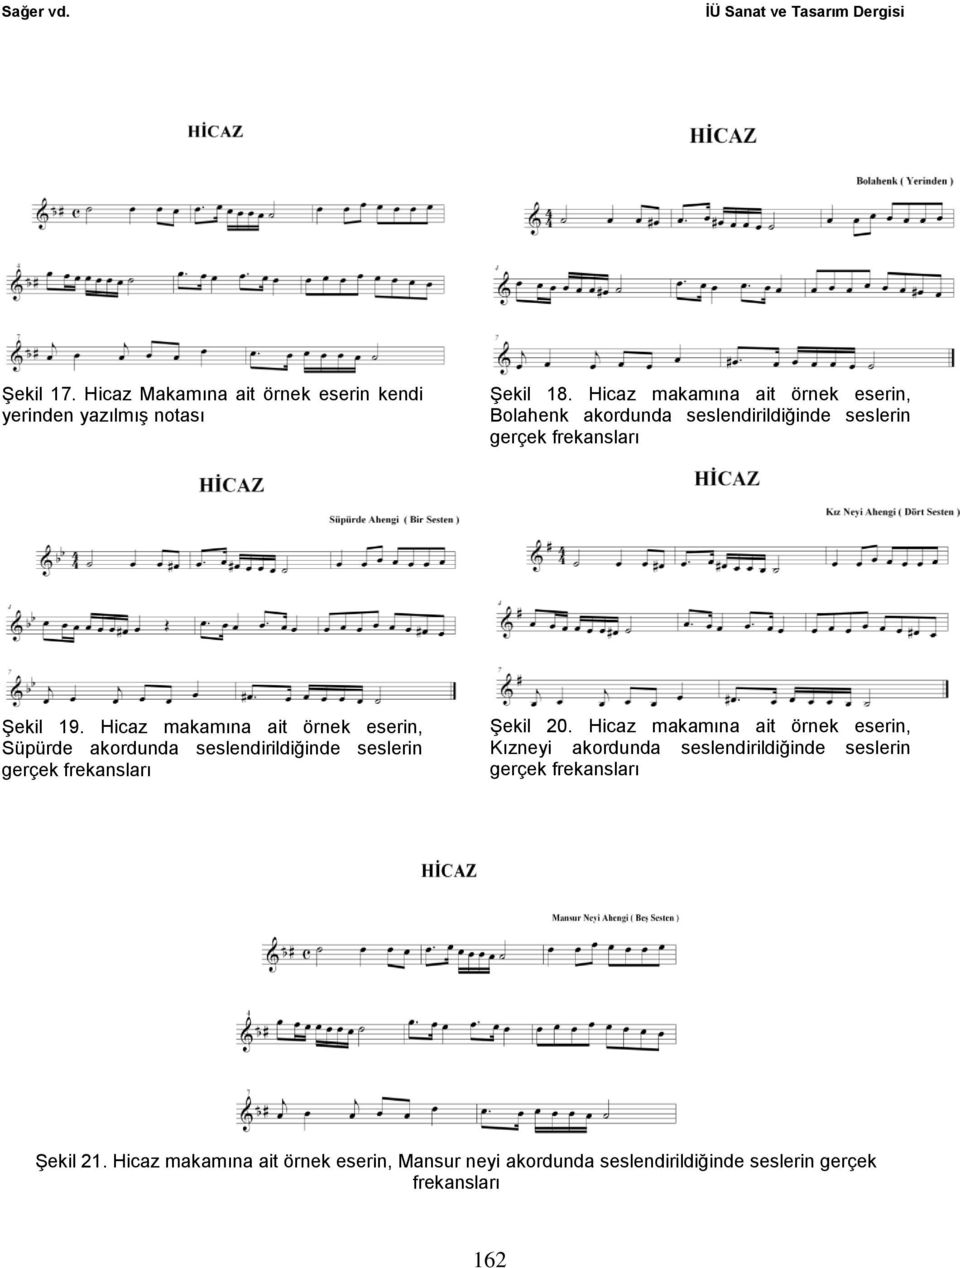 Hicaz makamına ait örnek eserin, Süpürde akordunda seslendirildiğinde seslerin Şekil 20.